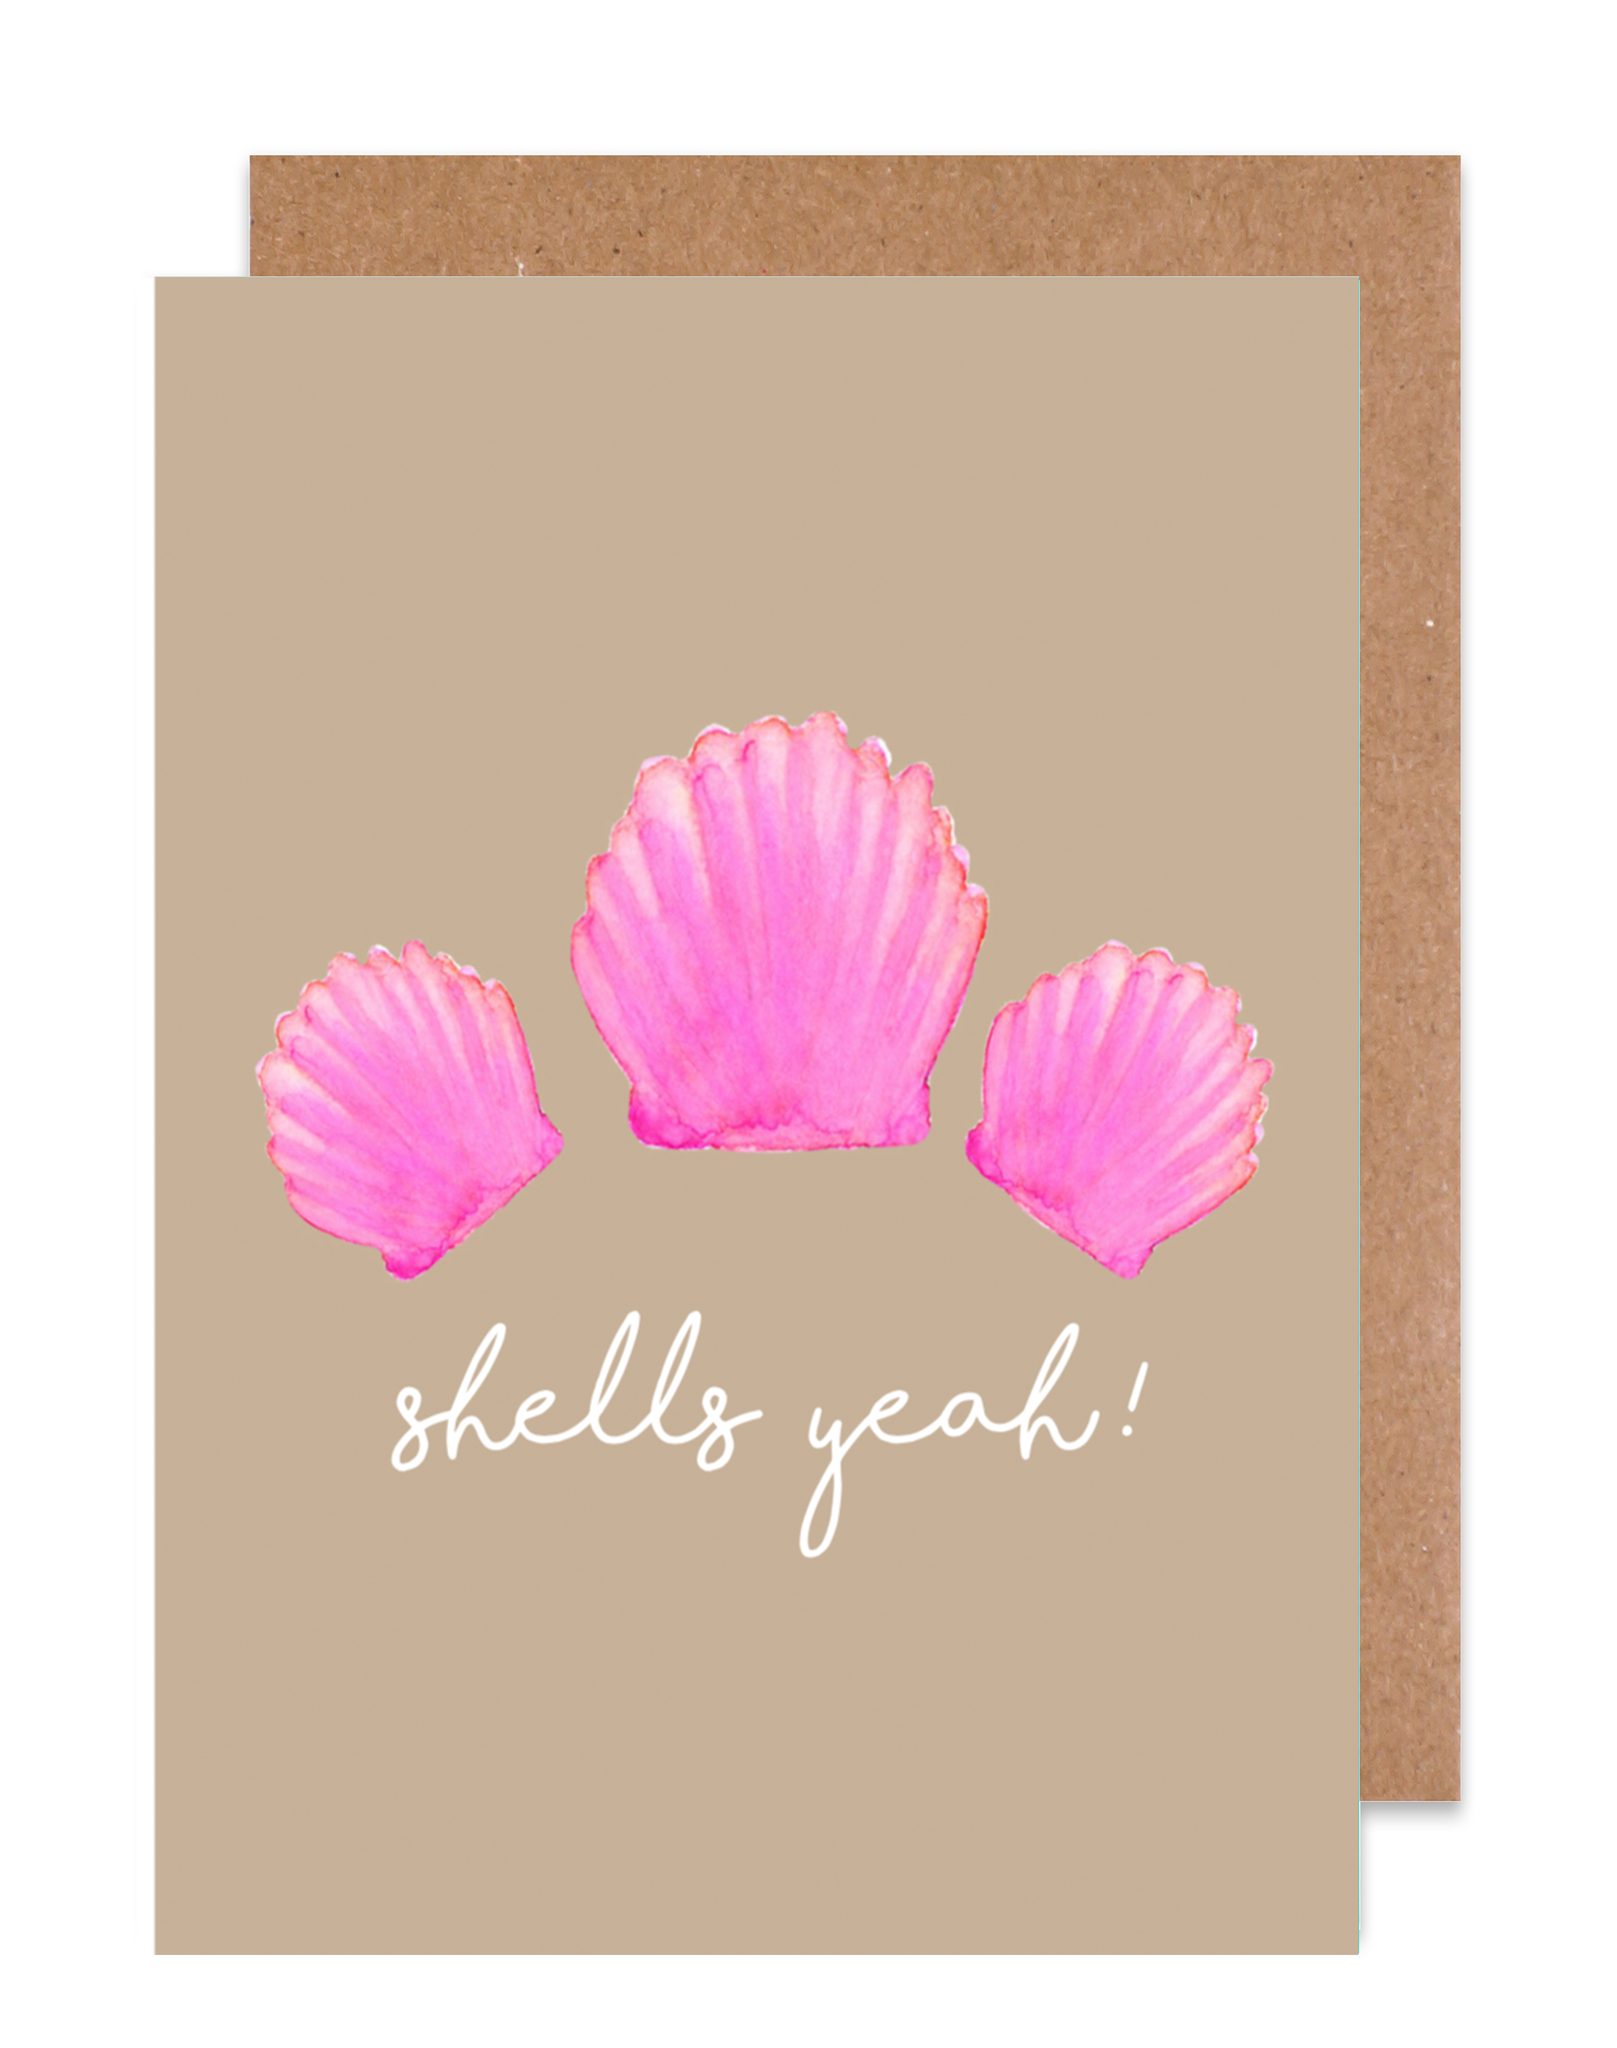 Shells Yeah! Card